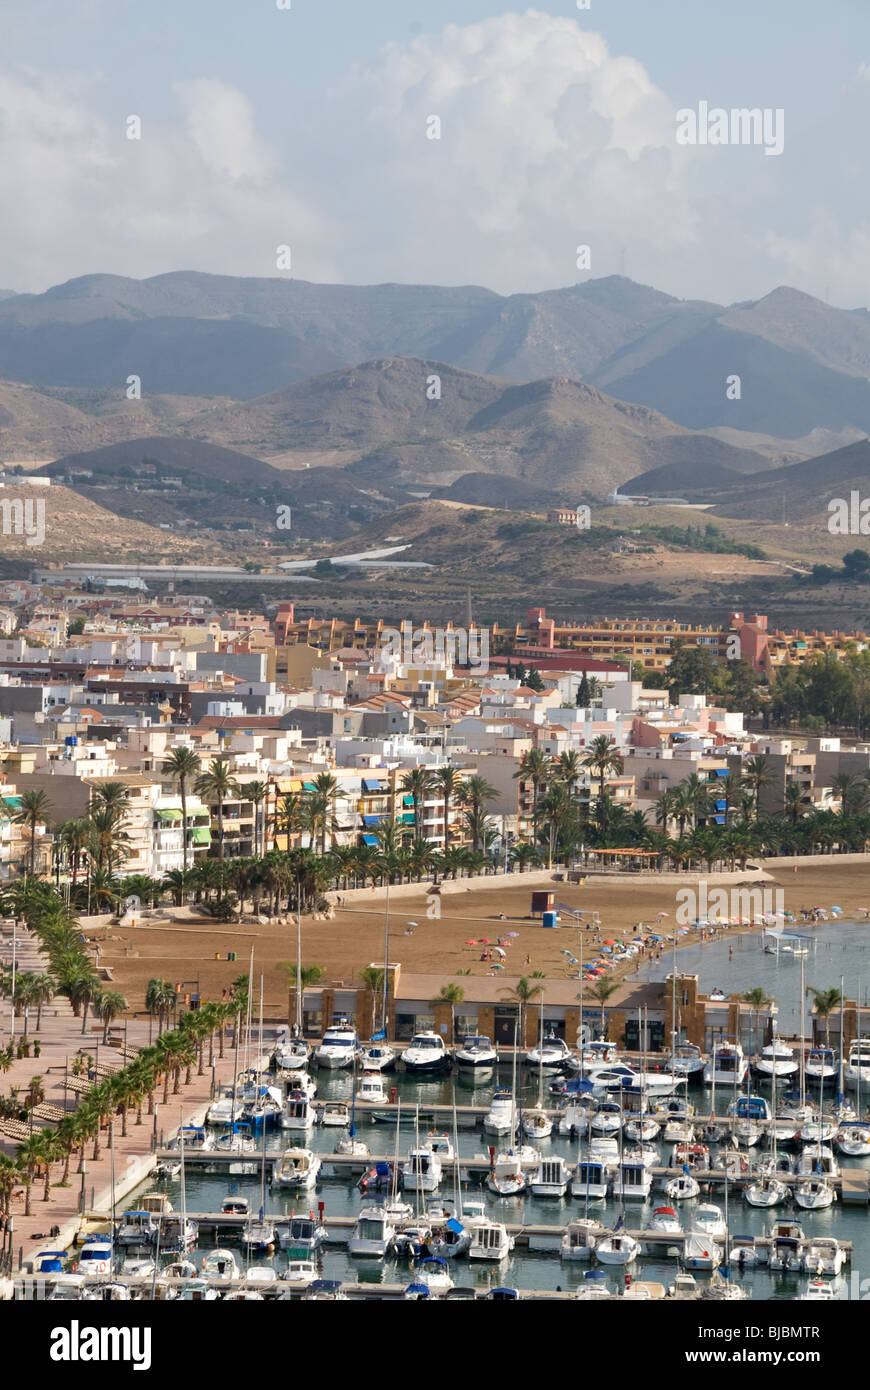 La nouvelle Marina et de la plage à Puerto de Mazarron avec montagnes en arrière-plan Murcia Costa Calida Espagne Banque D'Images